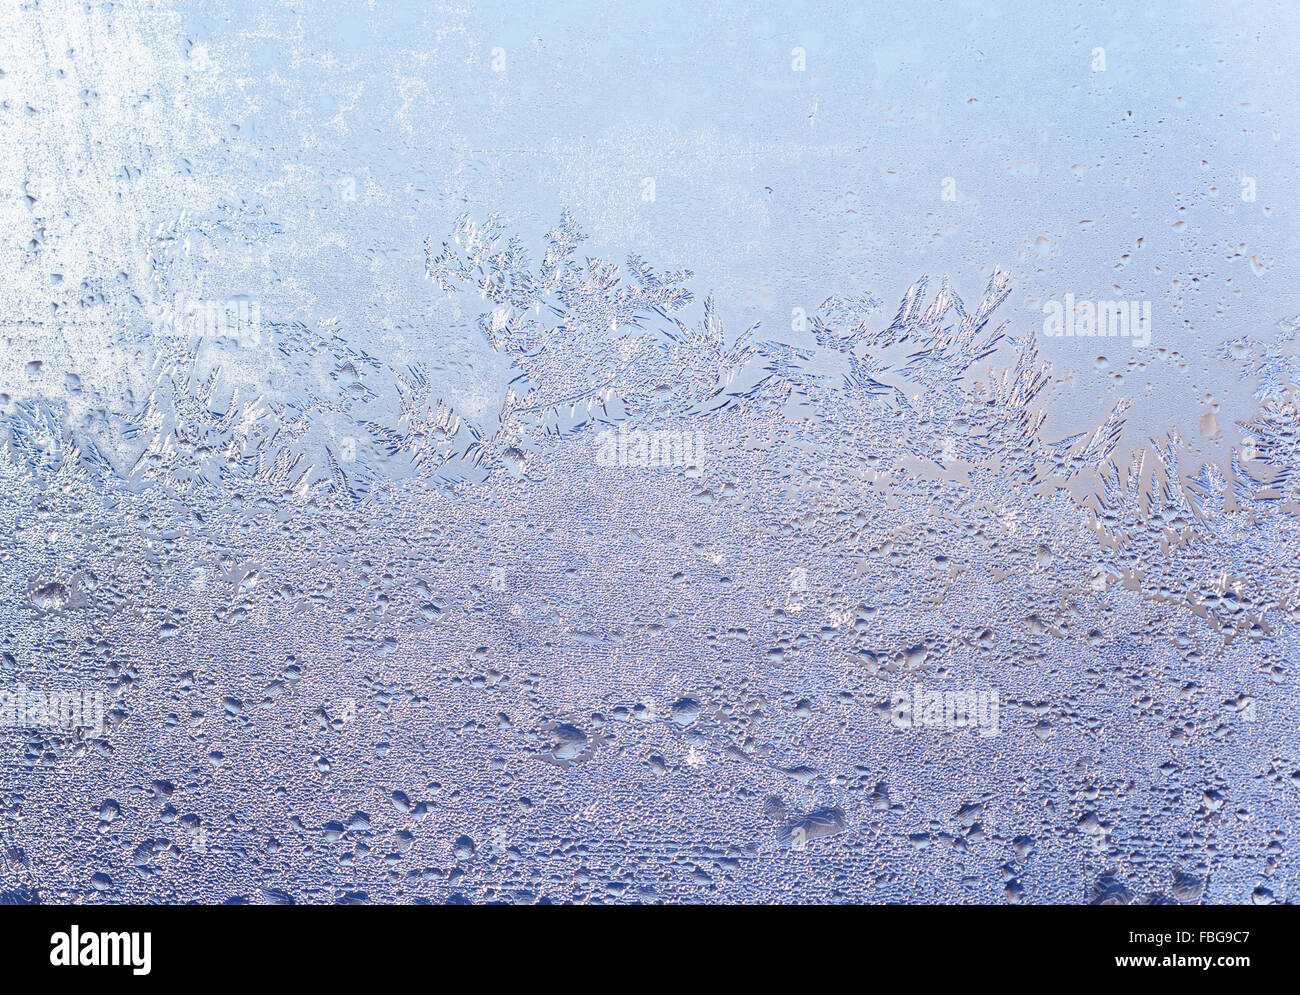 Zusammenfassung Hintergrund Blau: Nieselregen am Fenster Stockfoto